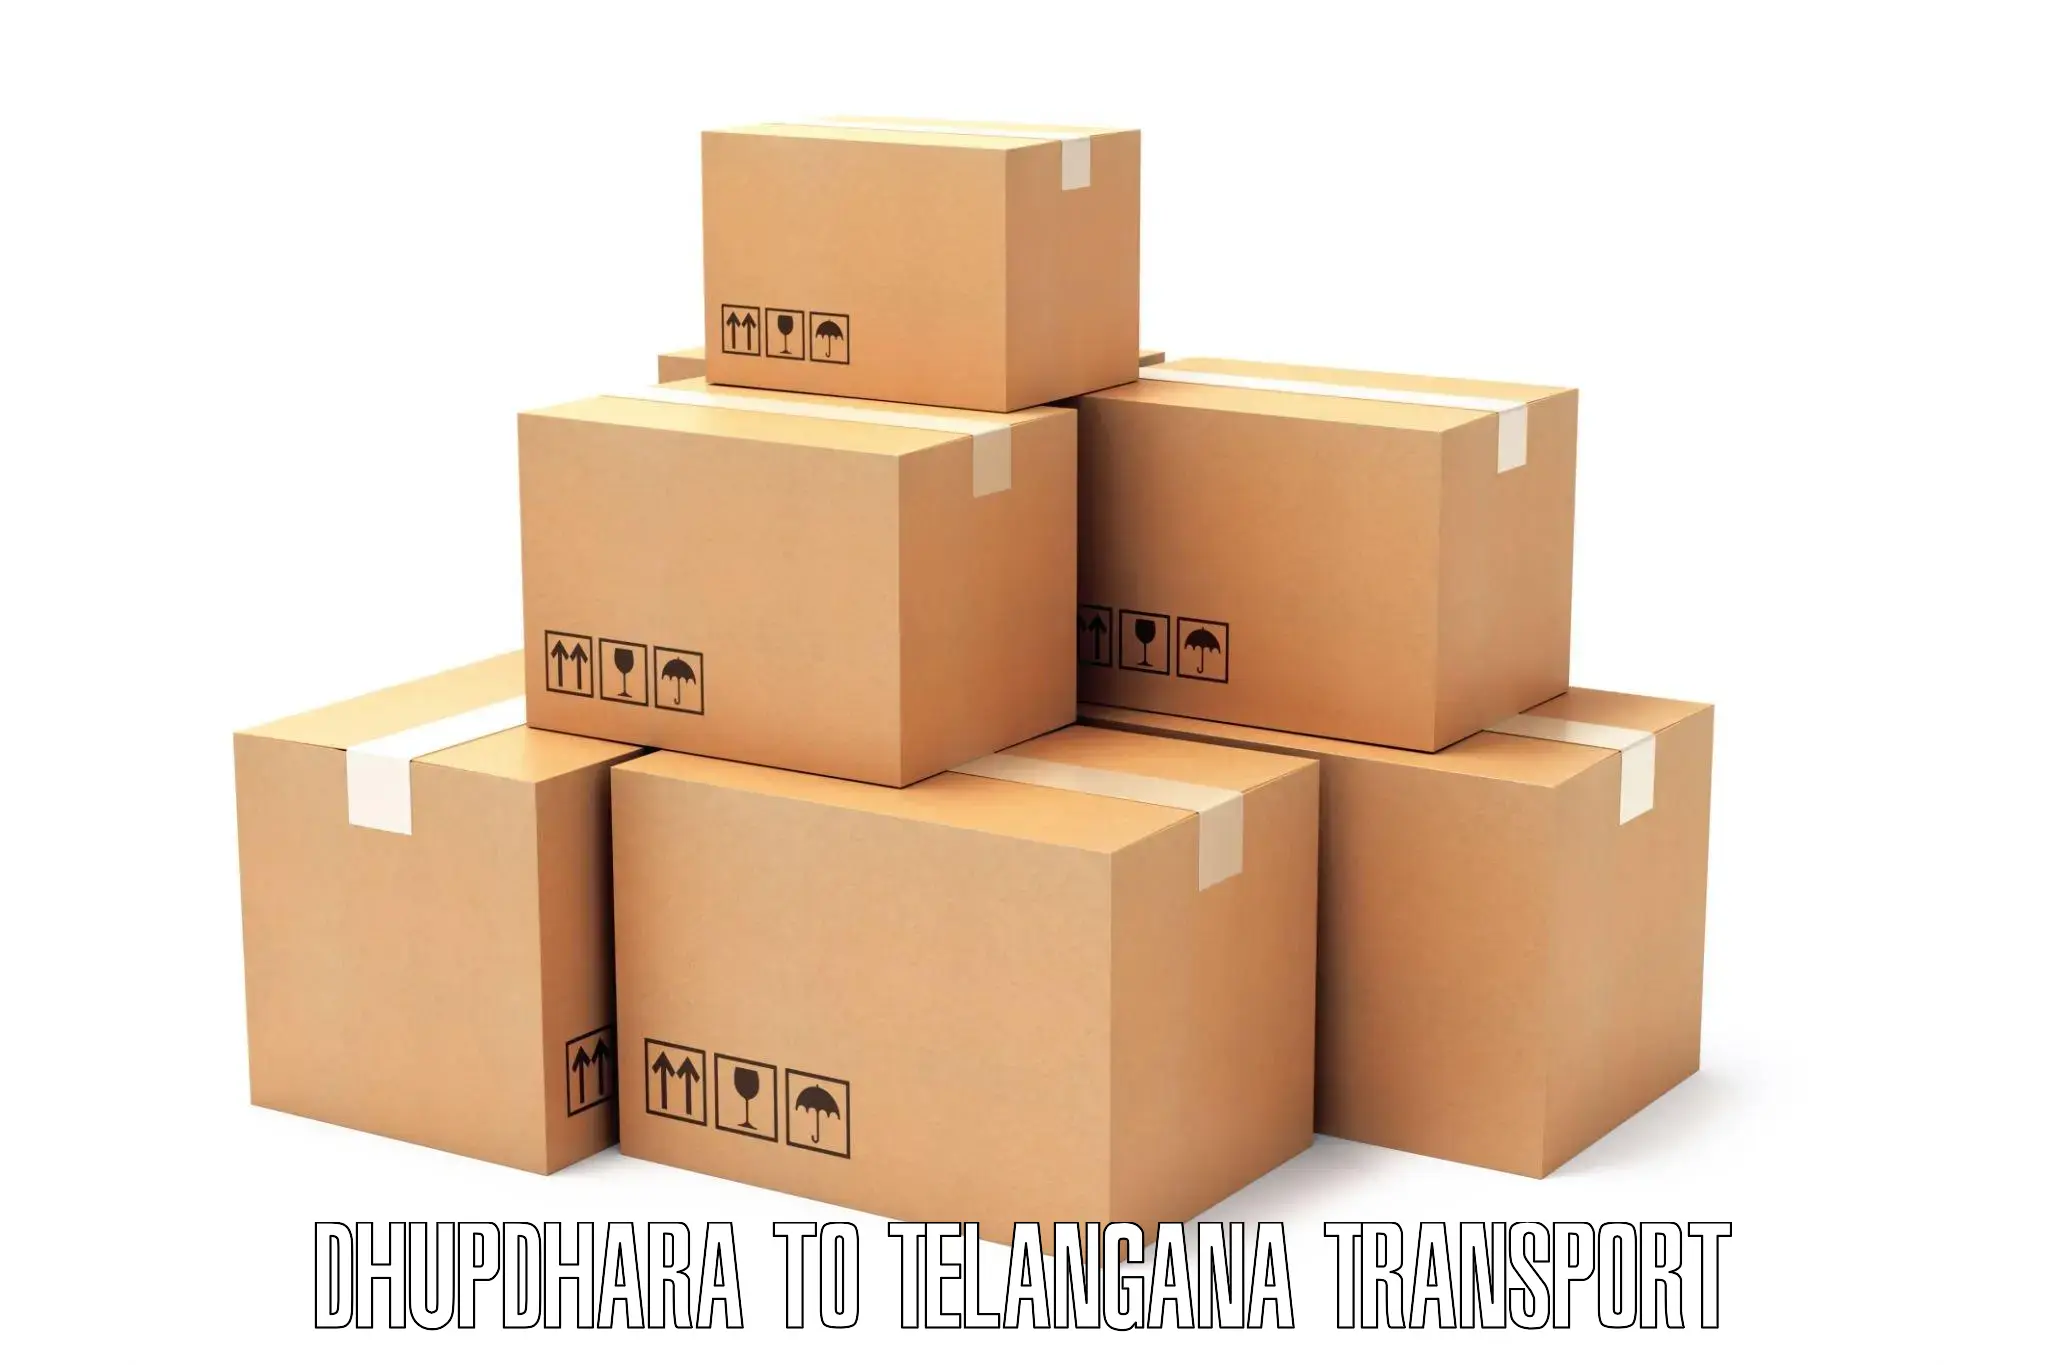 Daily parcel service transport Dhupdhara to Jangaon